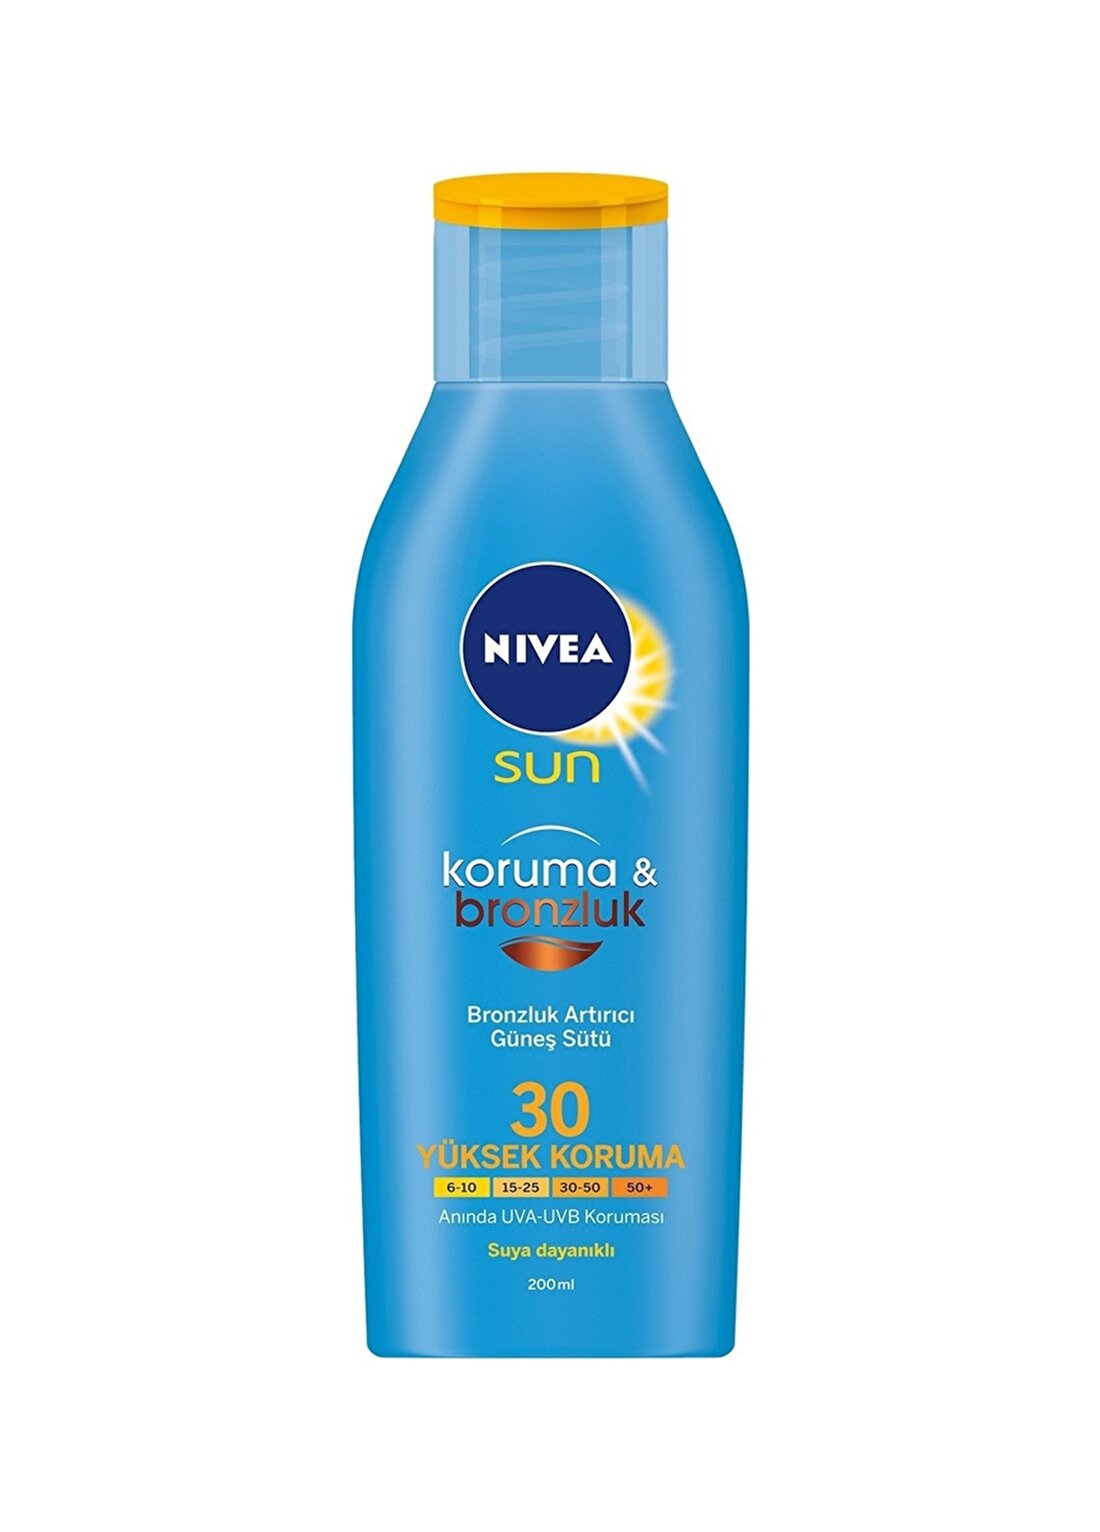 Nivea Sun SPF 30 Koruma&Bronzluk Bronzluk Artırıcı Losyon Güneş Ürünü